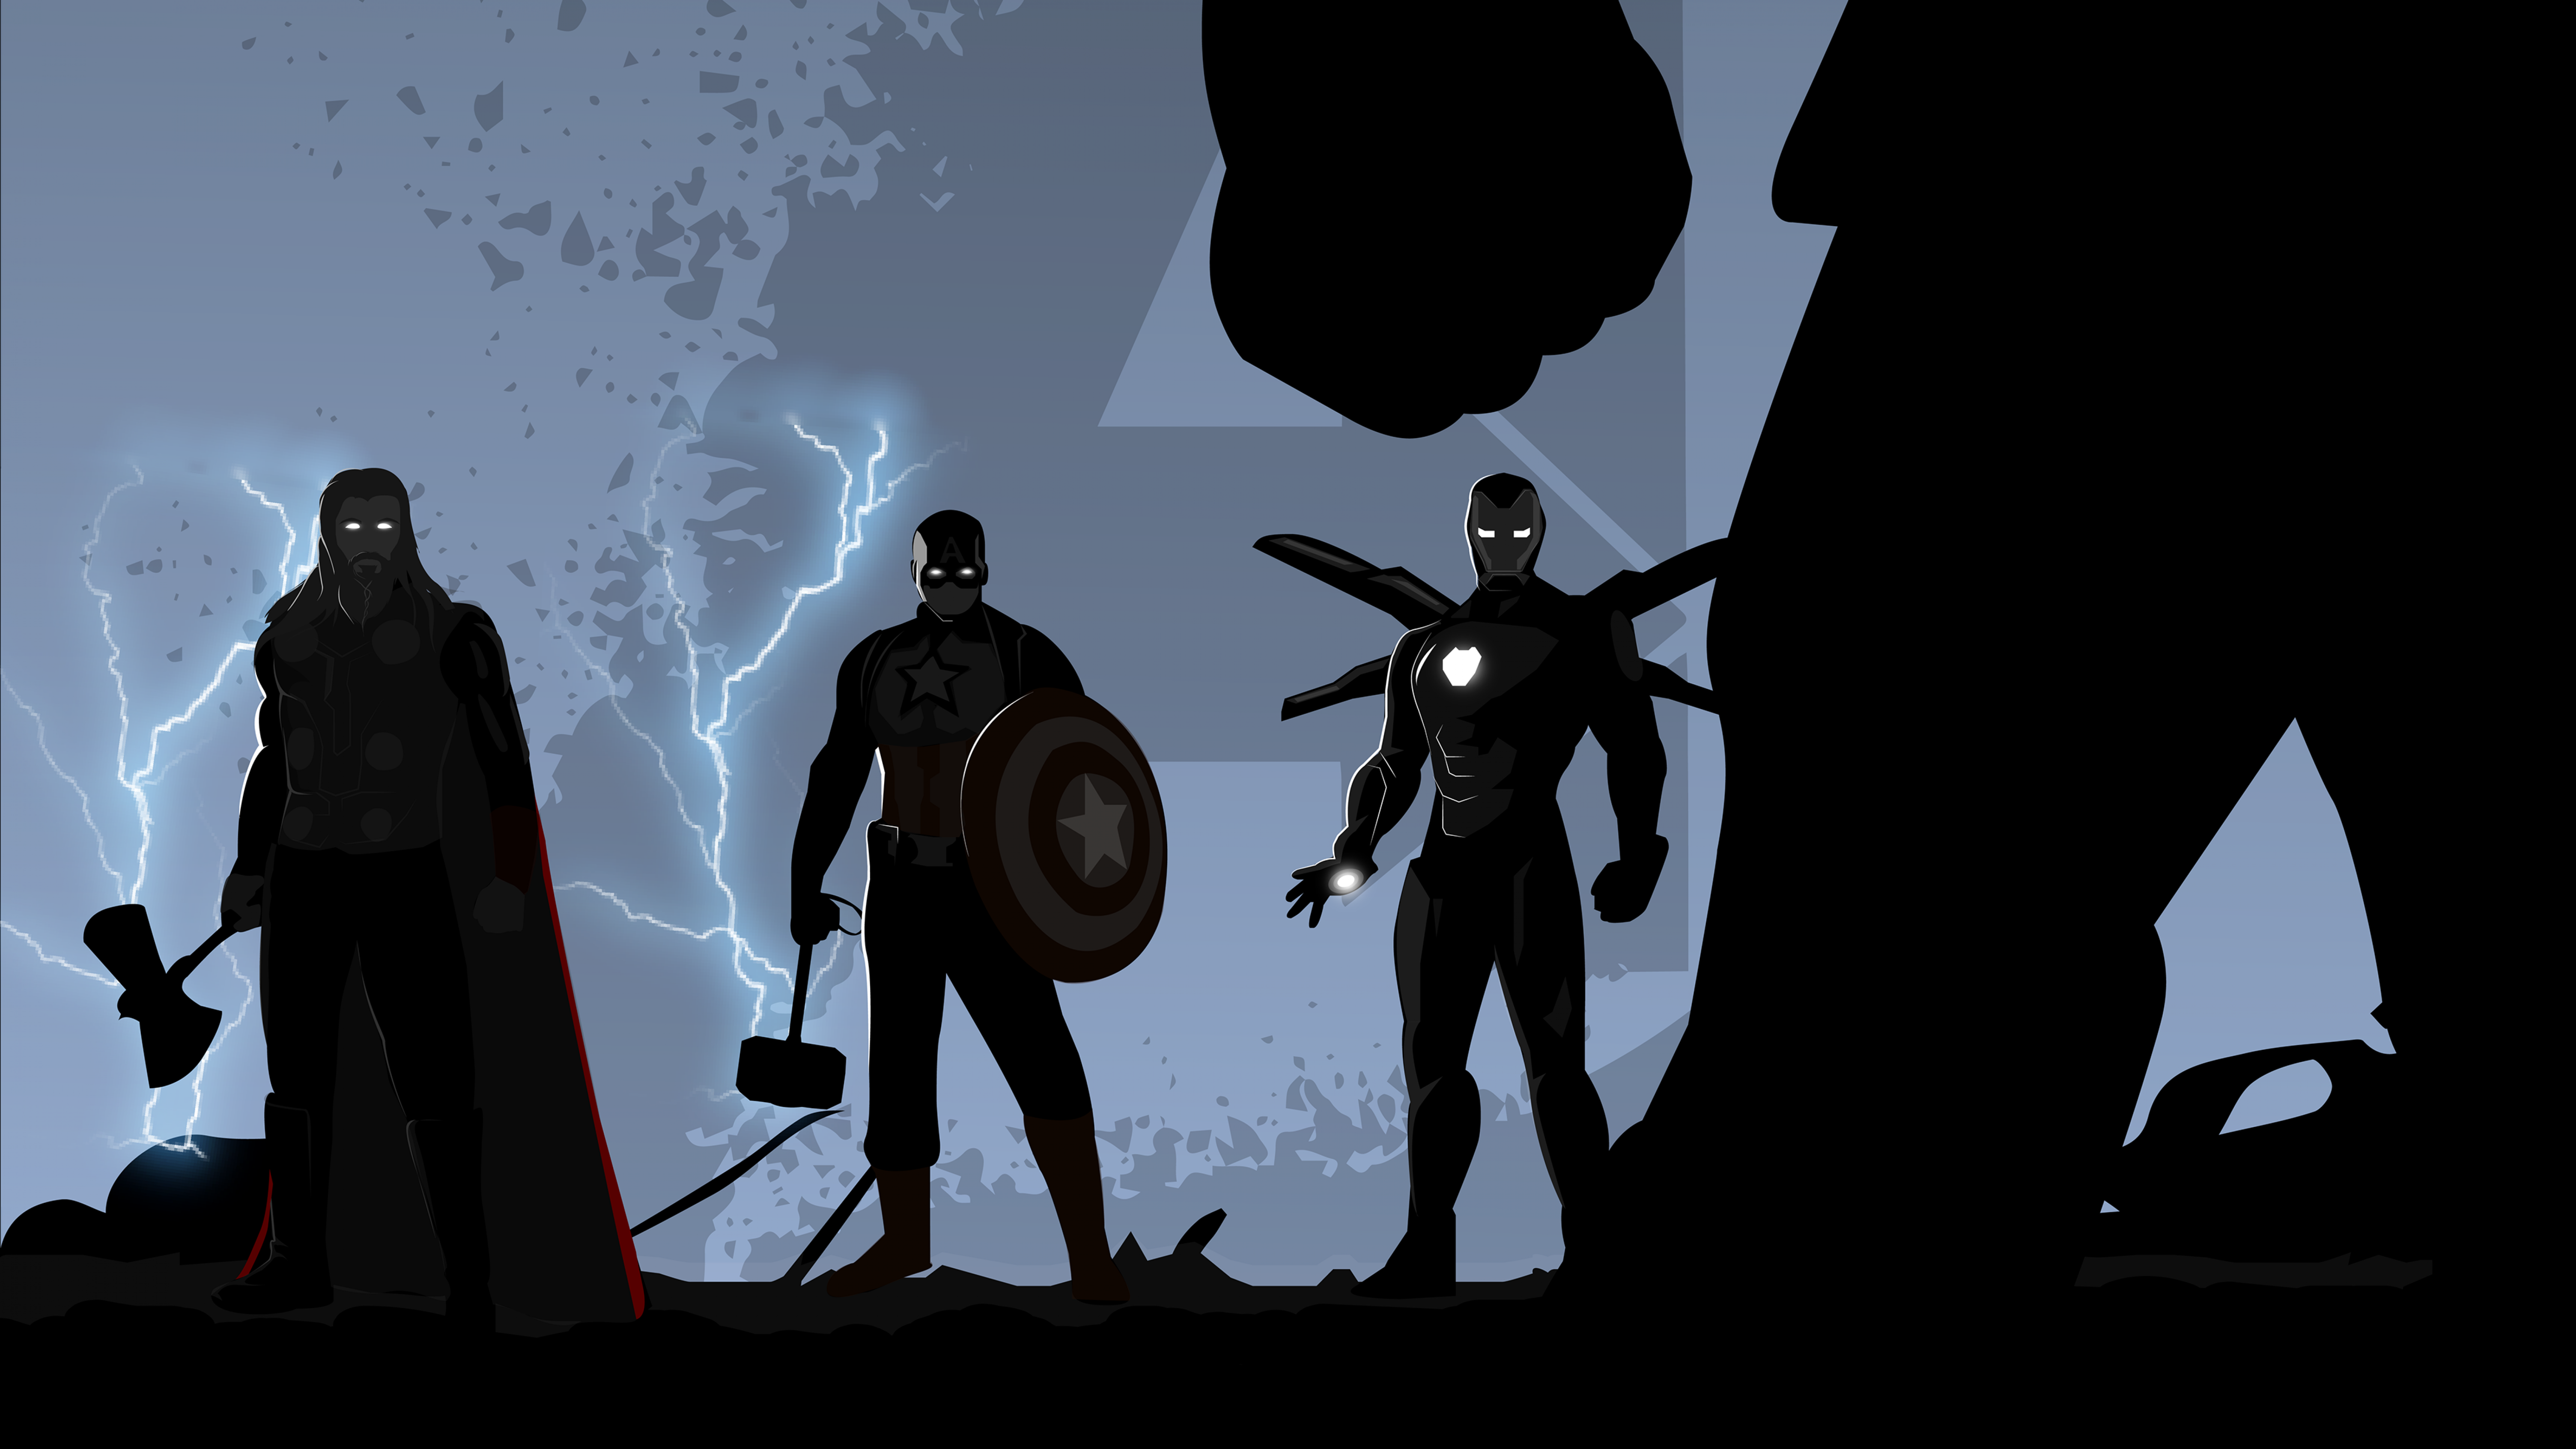  Thor Hintergrundbild 6016x3384. Avengers: Endgame Wallpaper 4K, Thor, Captain America, Black Dark